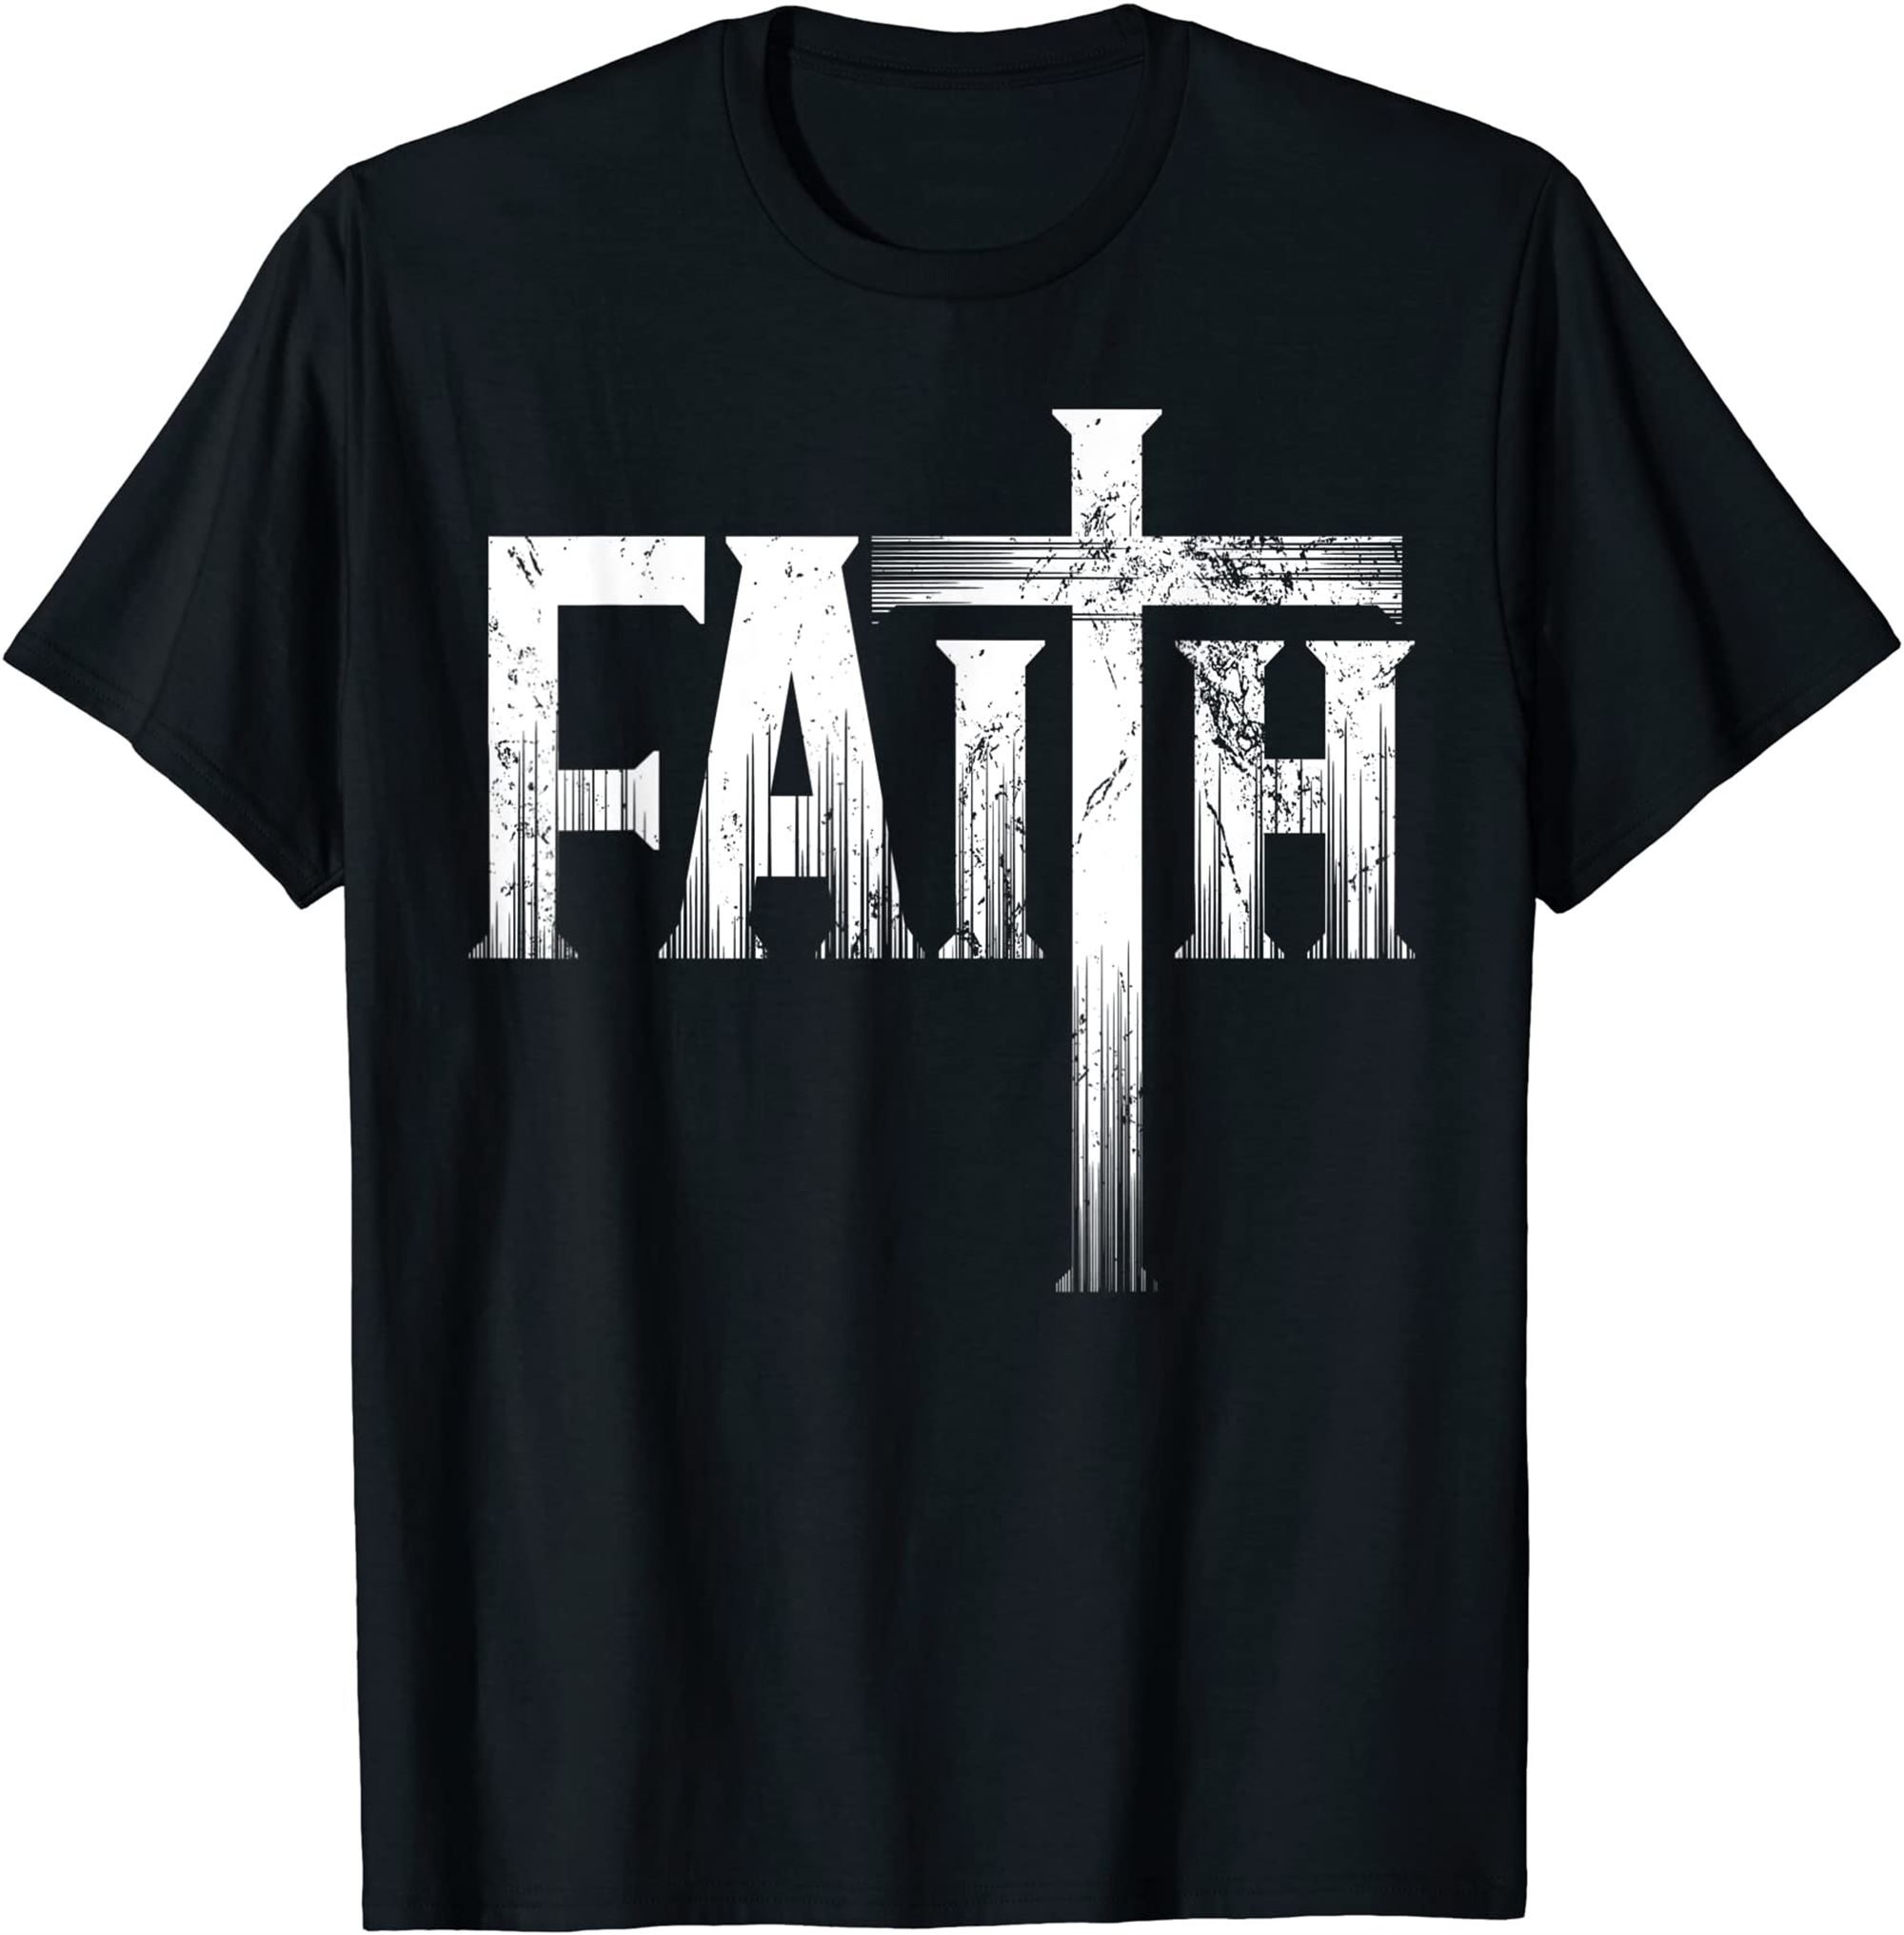 Christian Faith Cross Shirt Christian Faith Cross T-shirt Full Size Up To 5xl